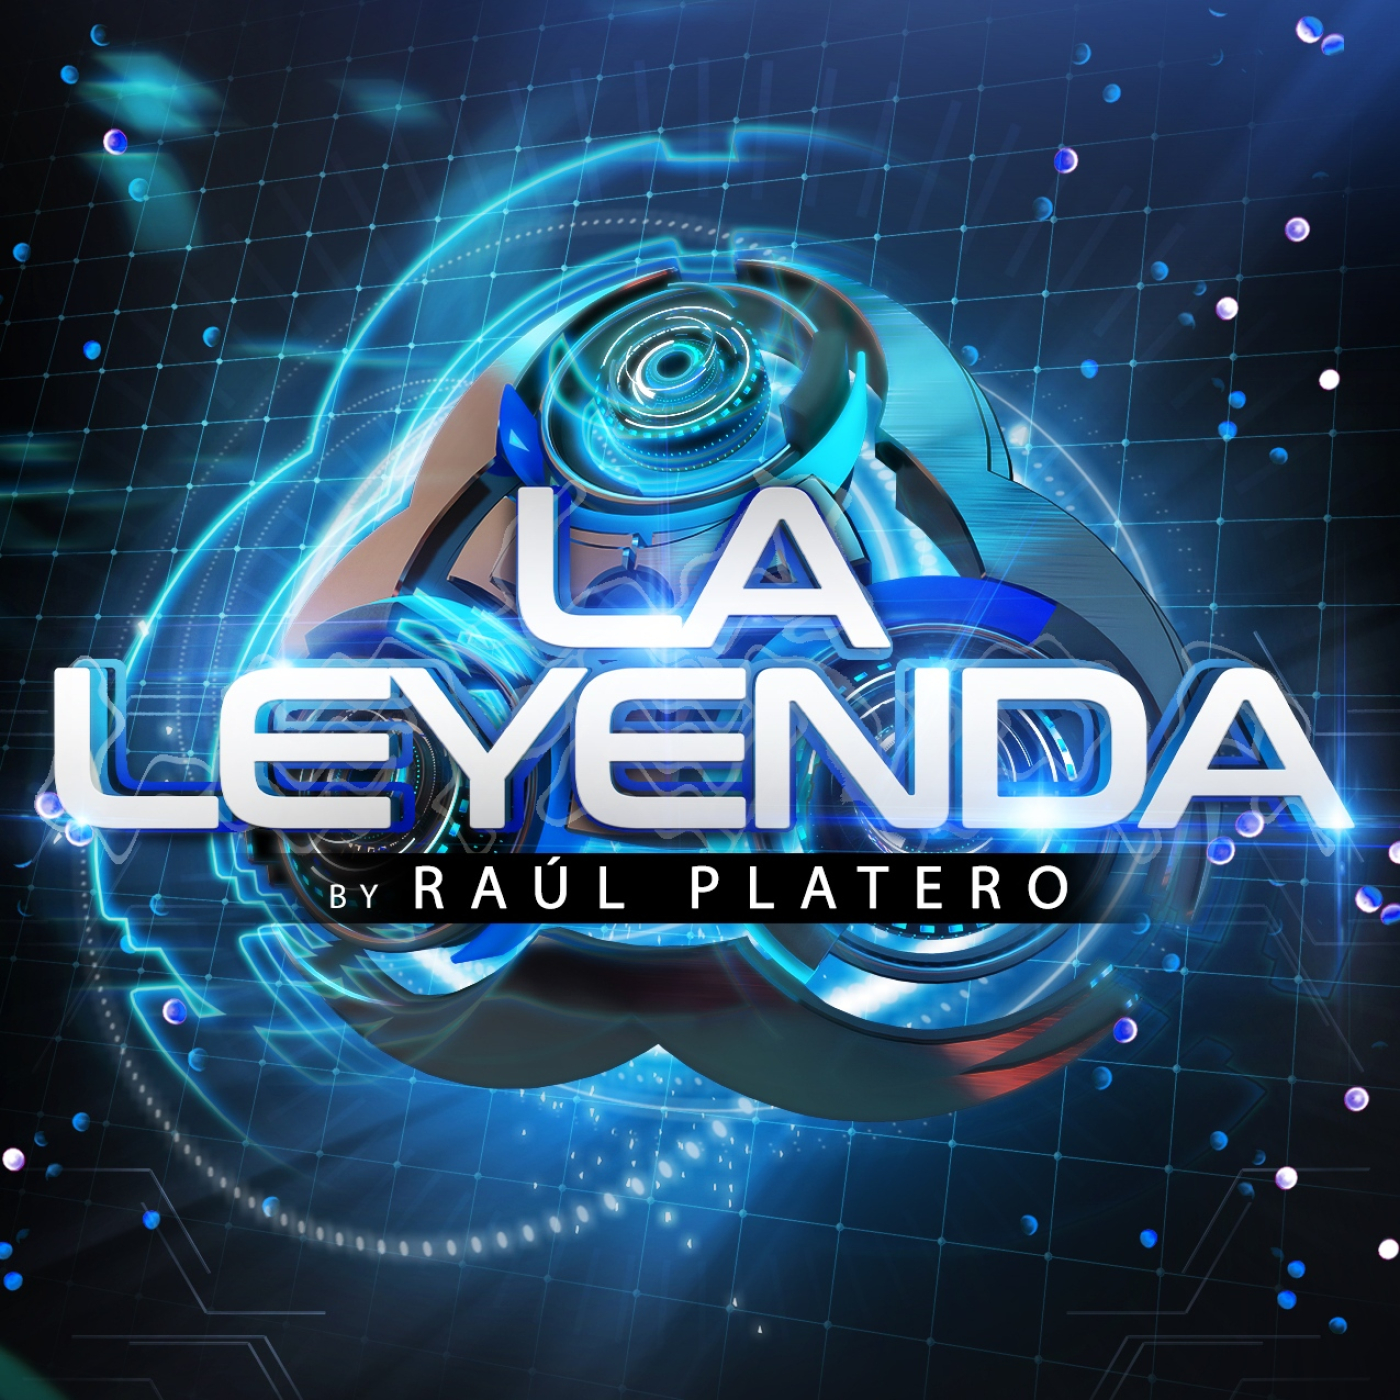 LA LEYENDA by RAUL PLATERO 2022 (Miércoles 29 Junio)